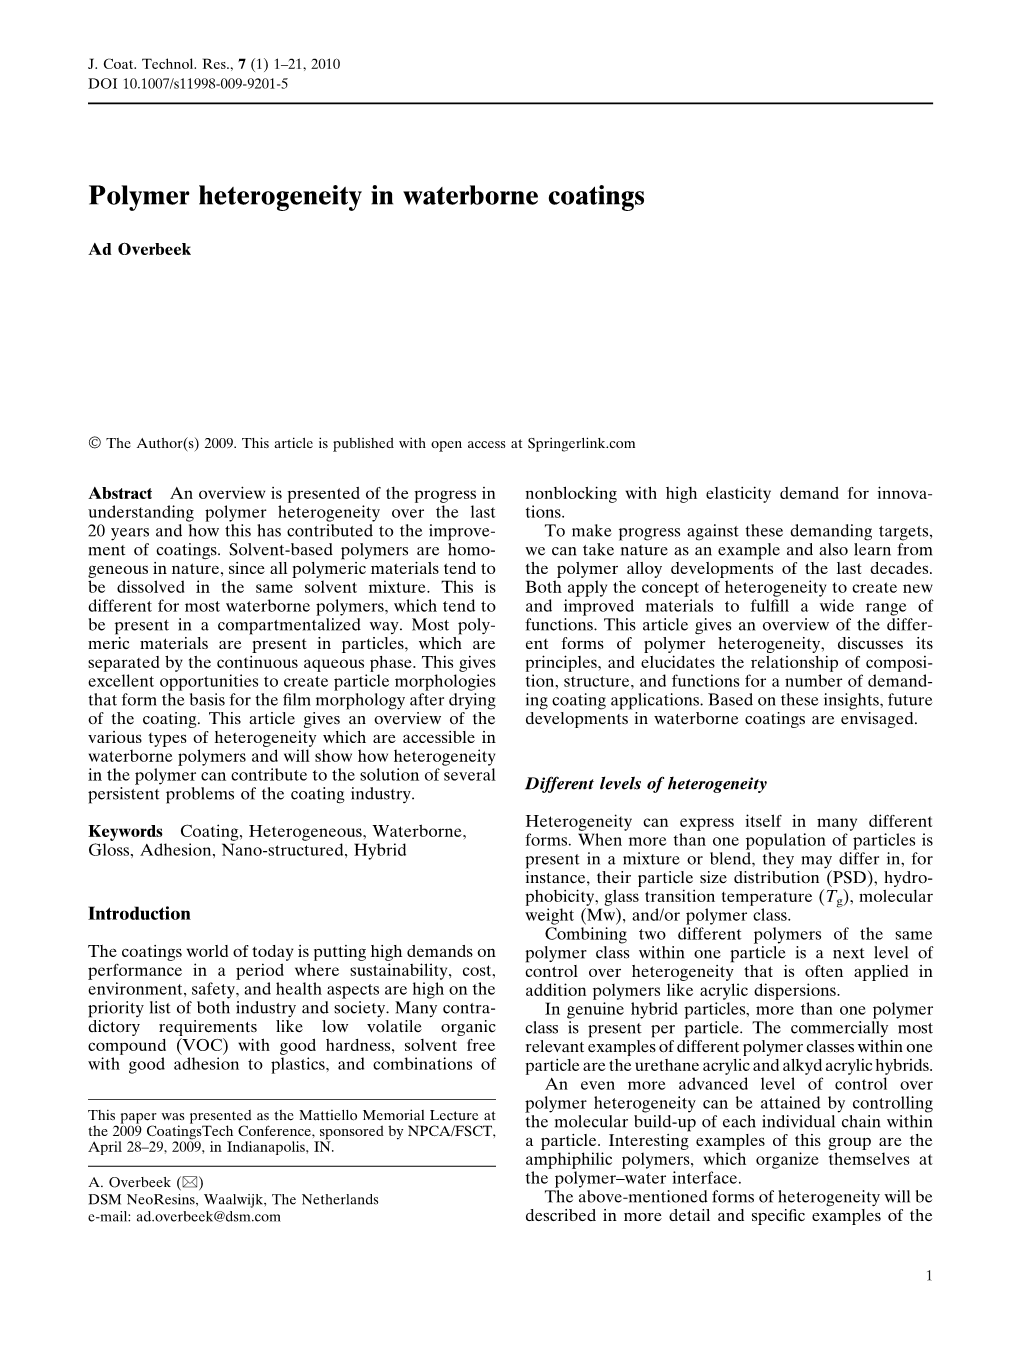 Polymer Heterogeneity in Waterborne Coatings